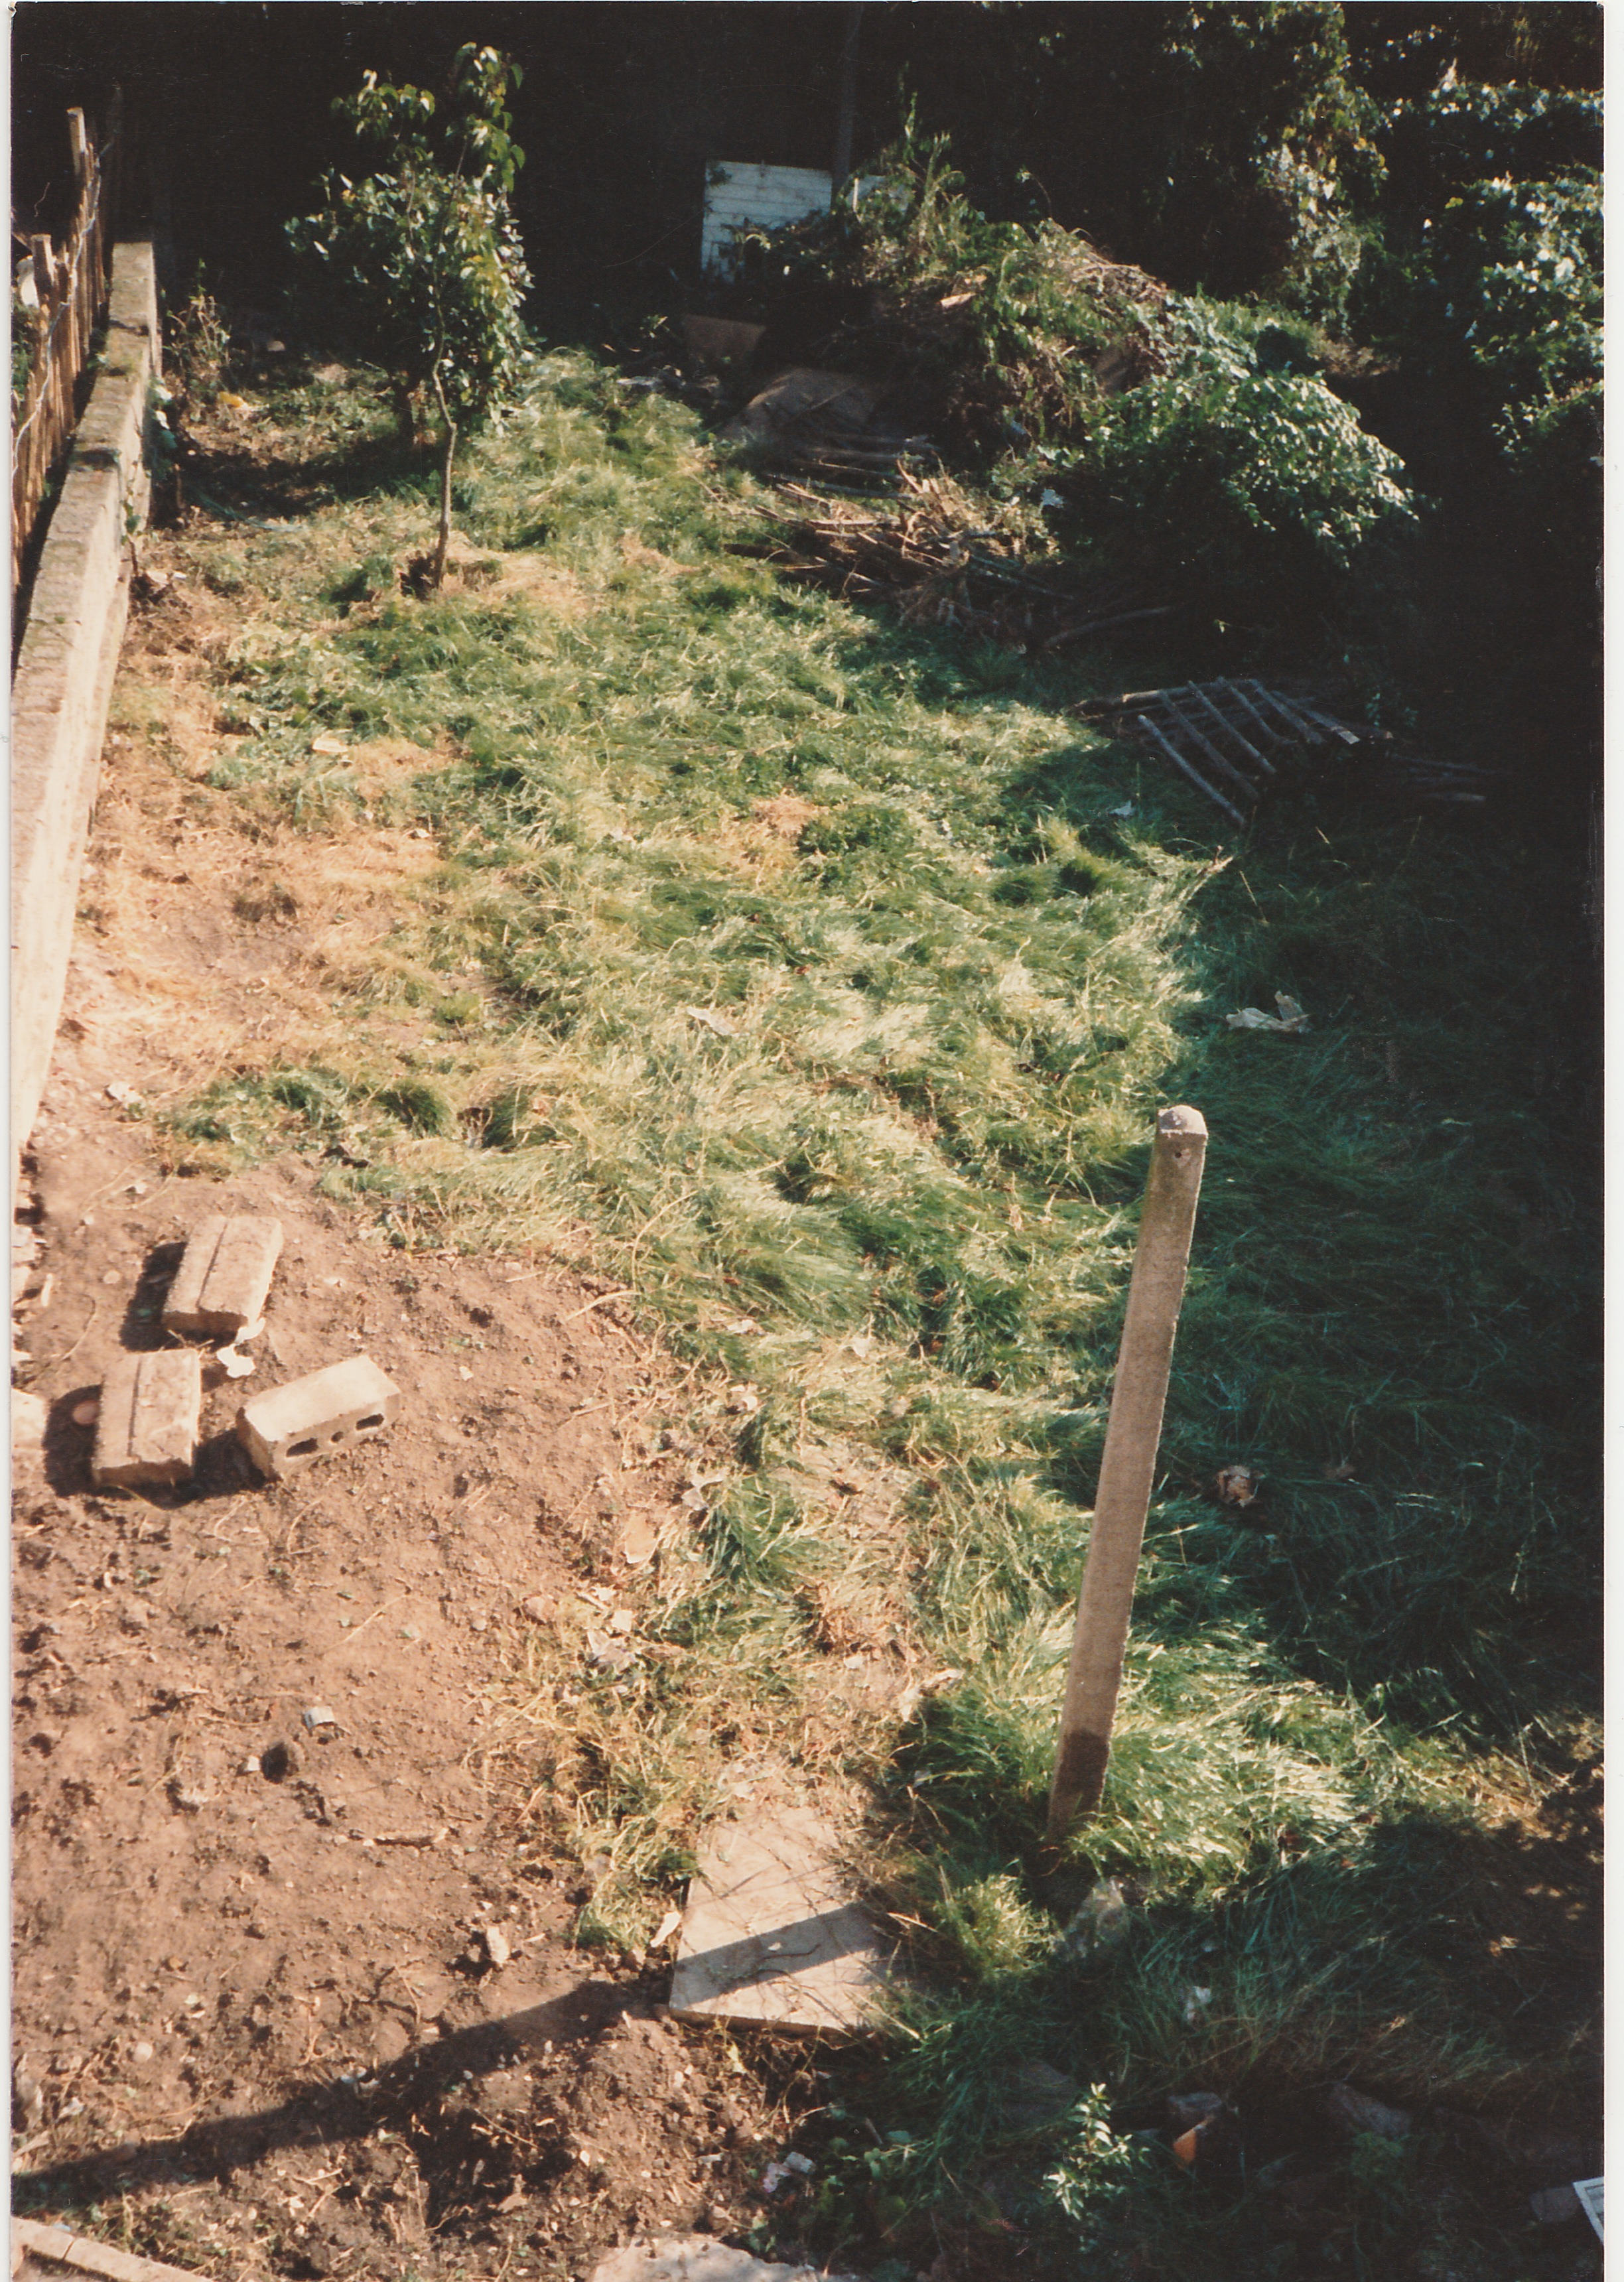 1988 circa the back garden at 9 ashmead grove